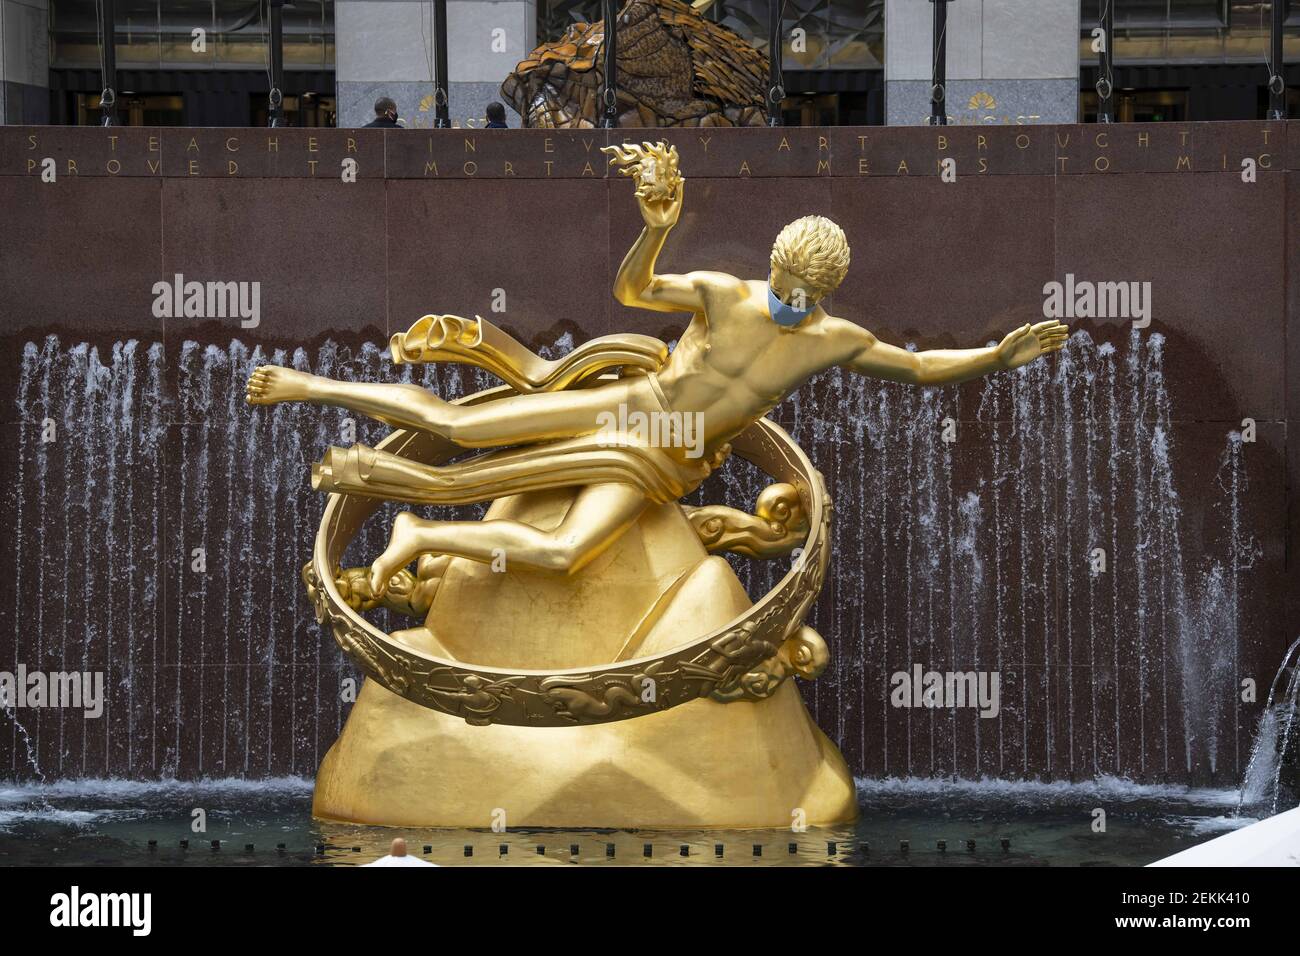 La sculpture Prométhée du Rockefeller Center présente un masque d'EPI en raison de Covid-19 à Manhattan, New York, le 16 septembre 2020. (Kostas Lymperopoulos/CSM/Sipa USA) Banque D'Images